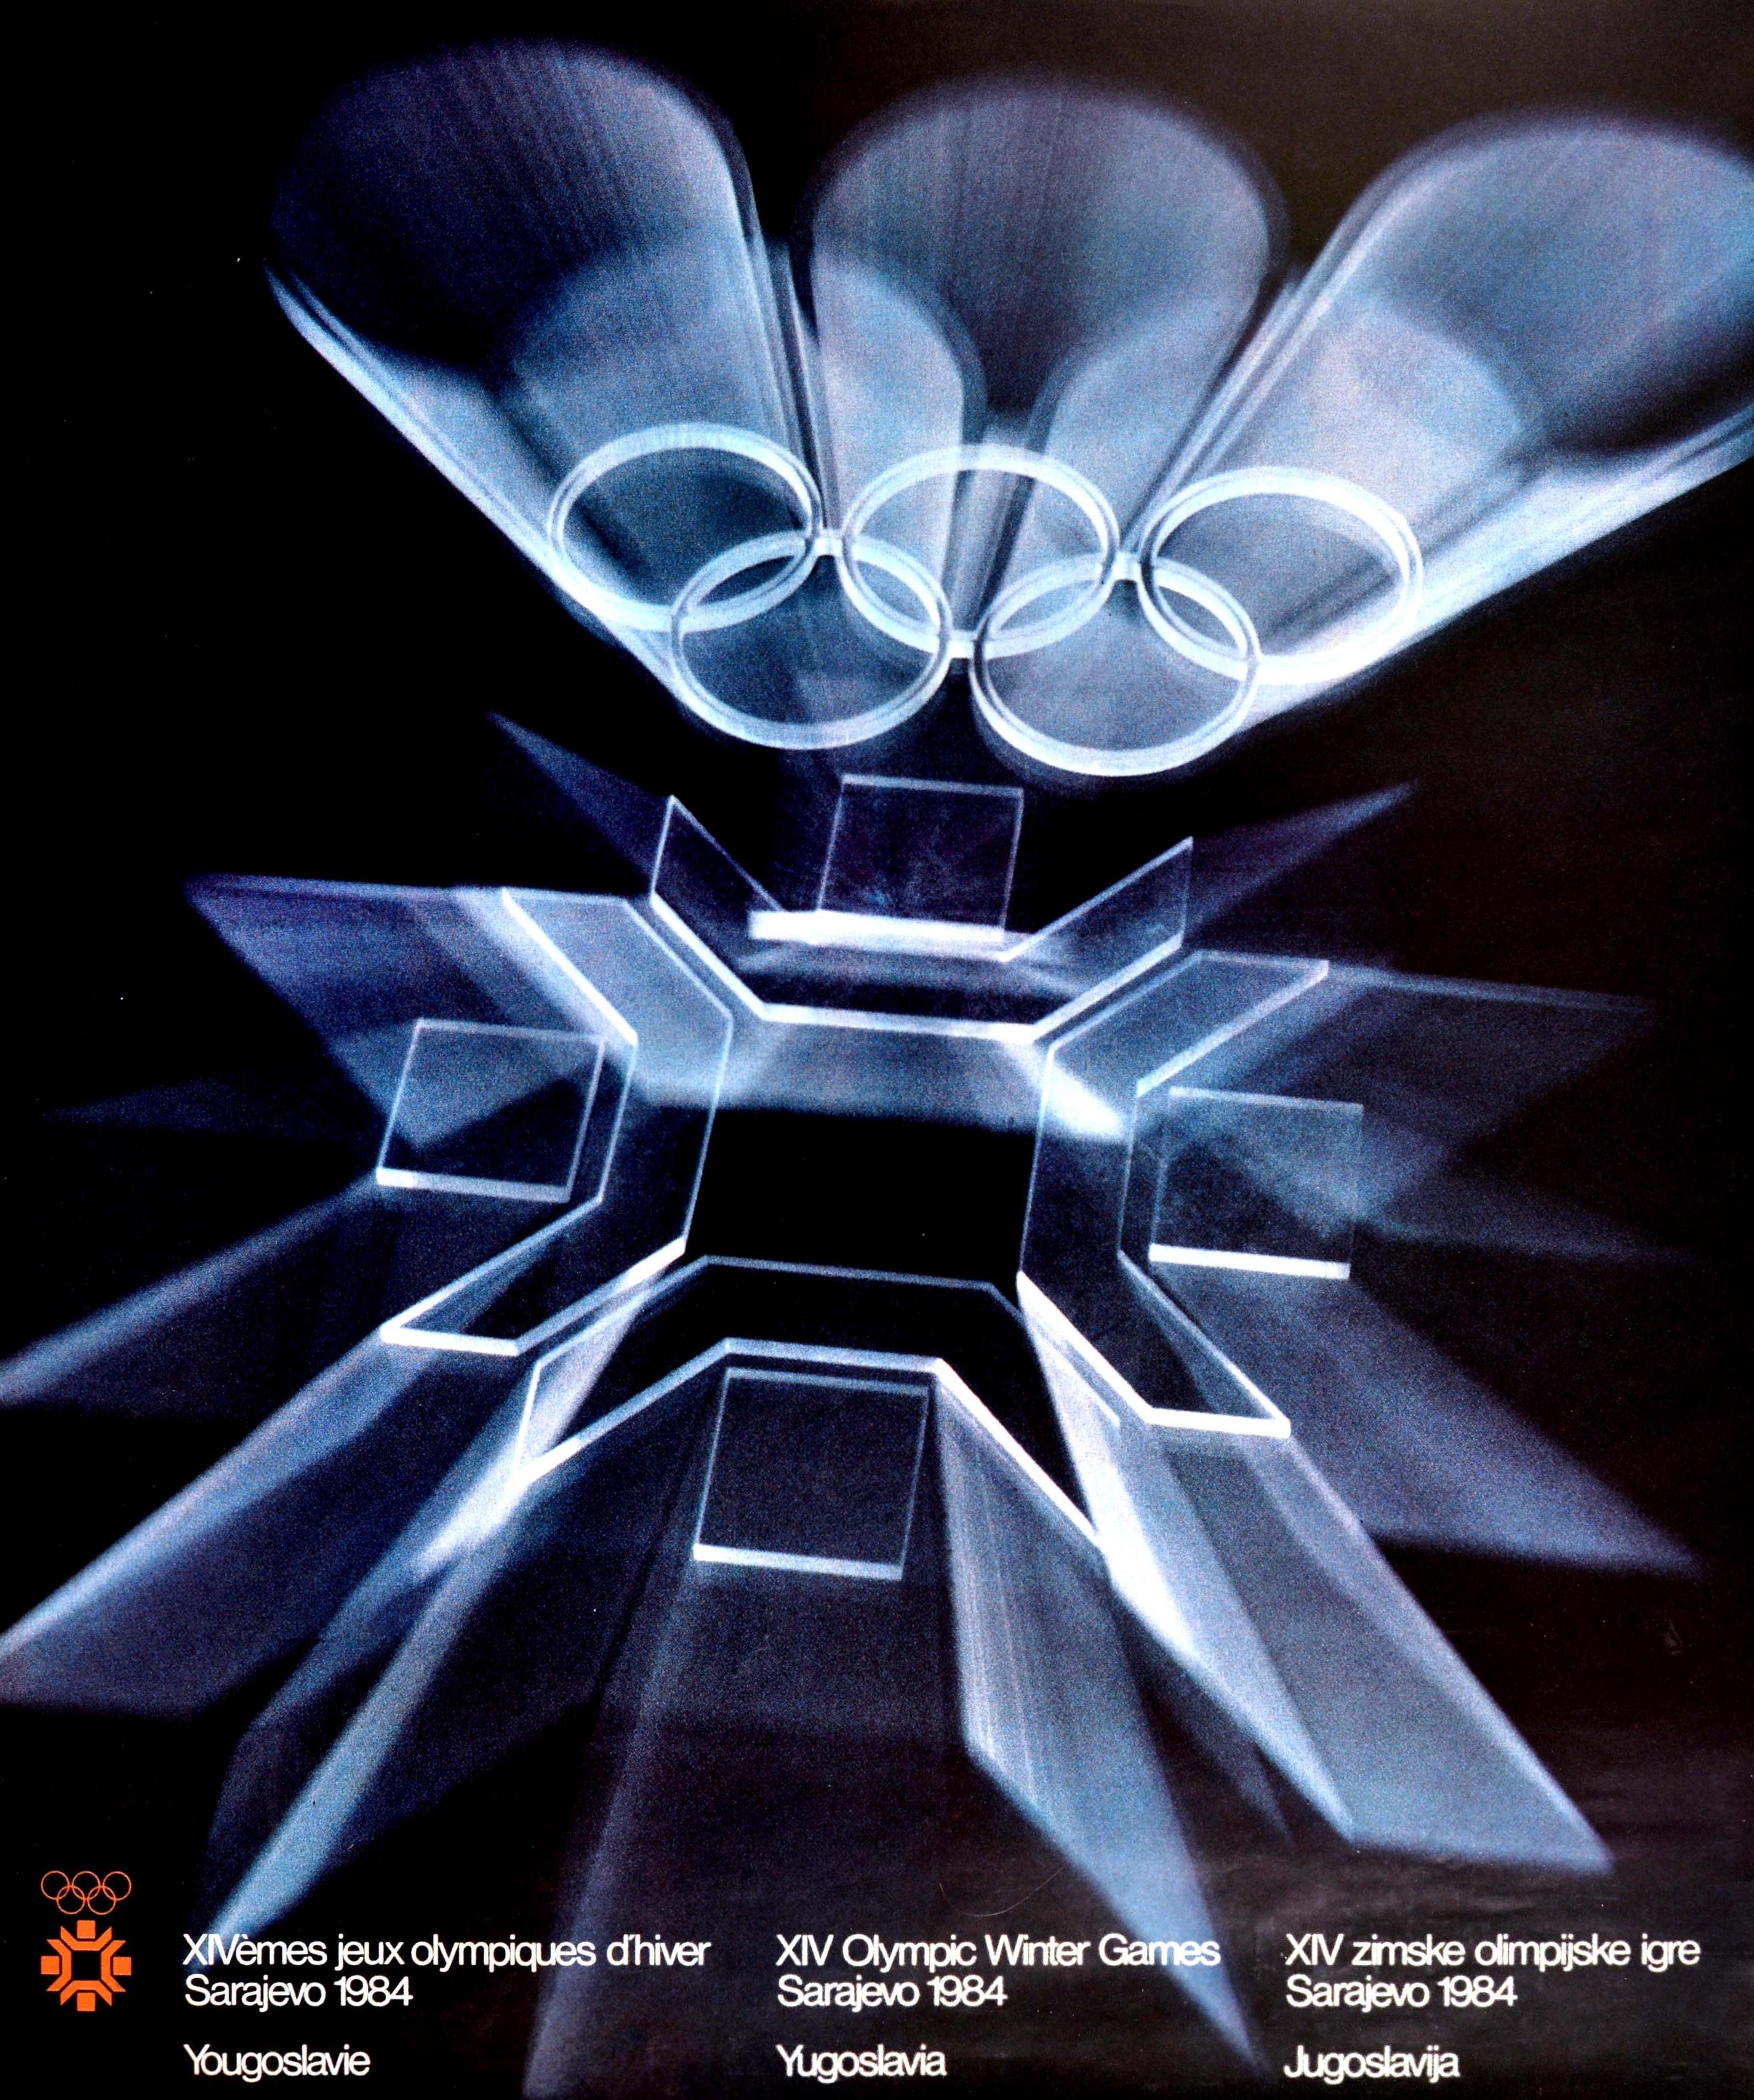 sarajevo olympics 1984